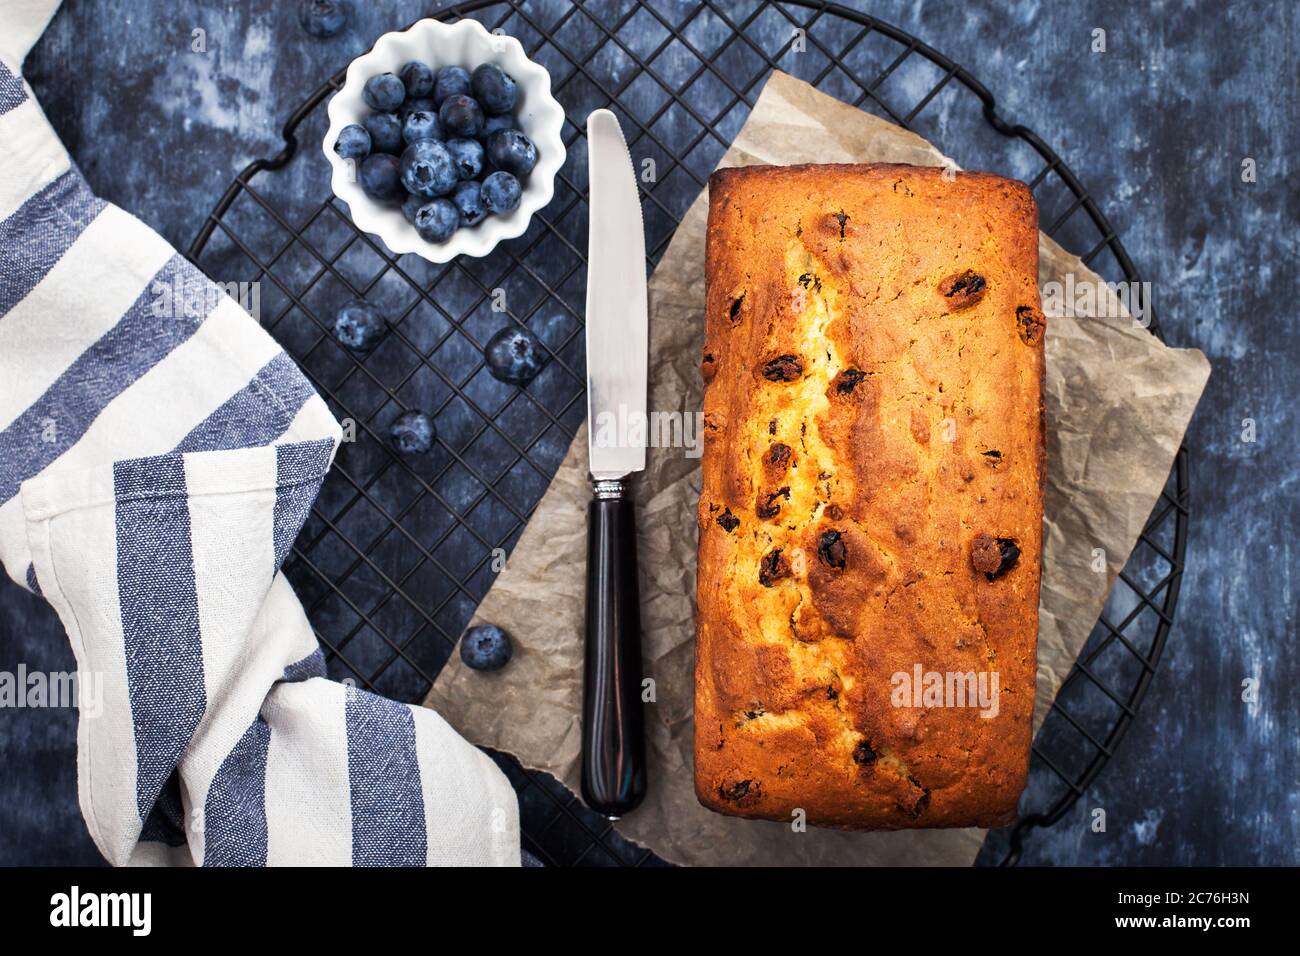 Délicieux fromage maison et gâteau de pain aux raisins sur fond bleu, vue de dessus Banque D'Images